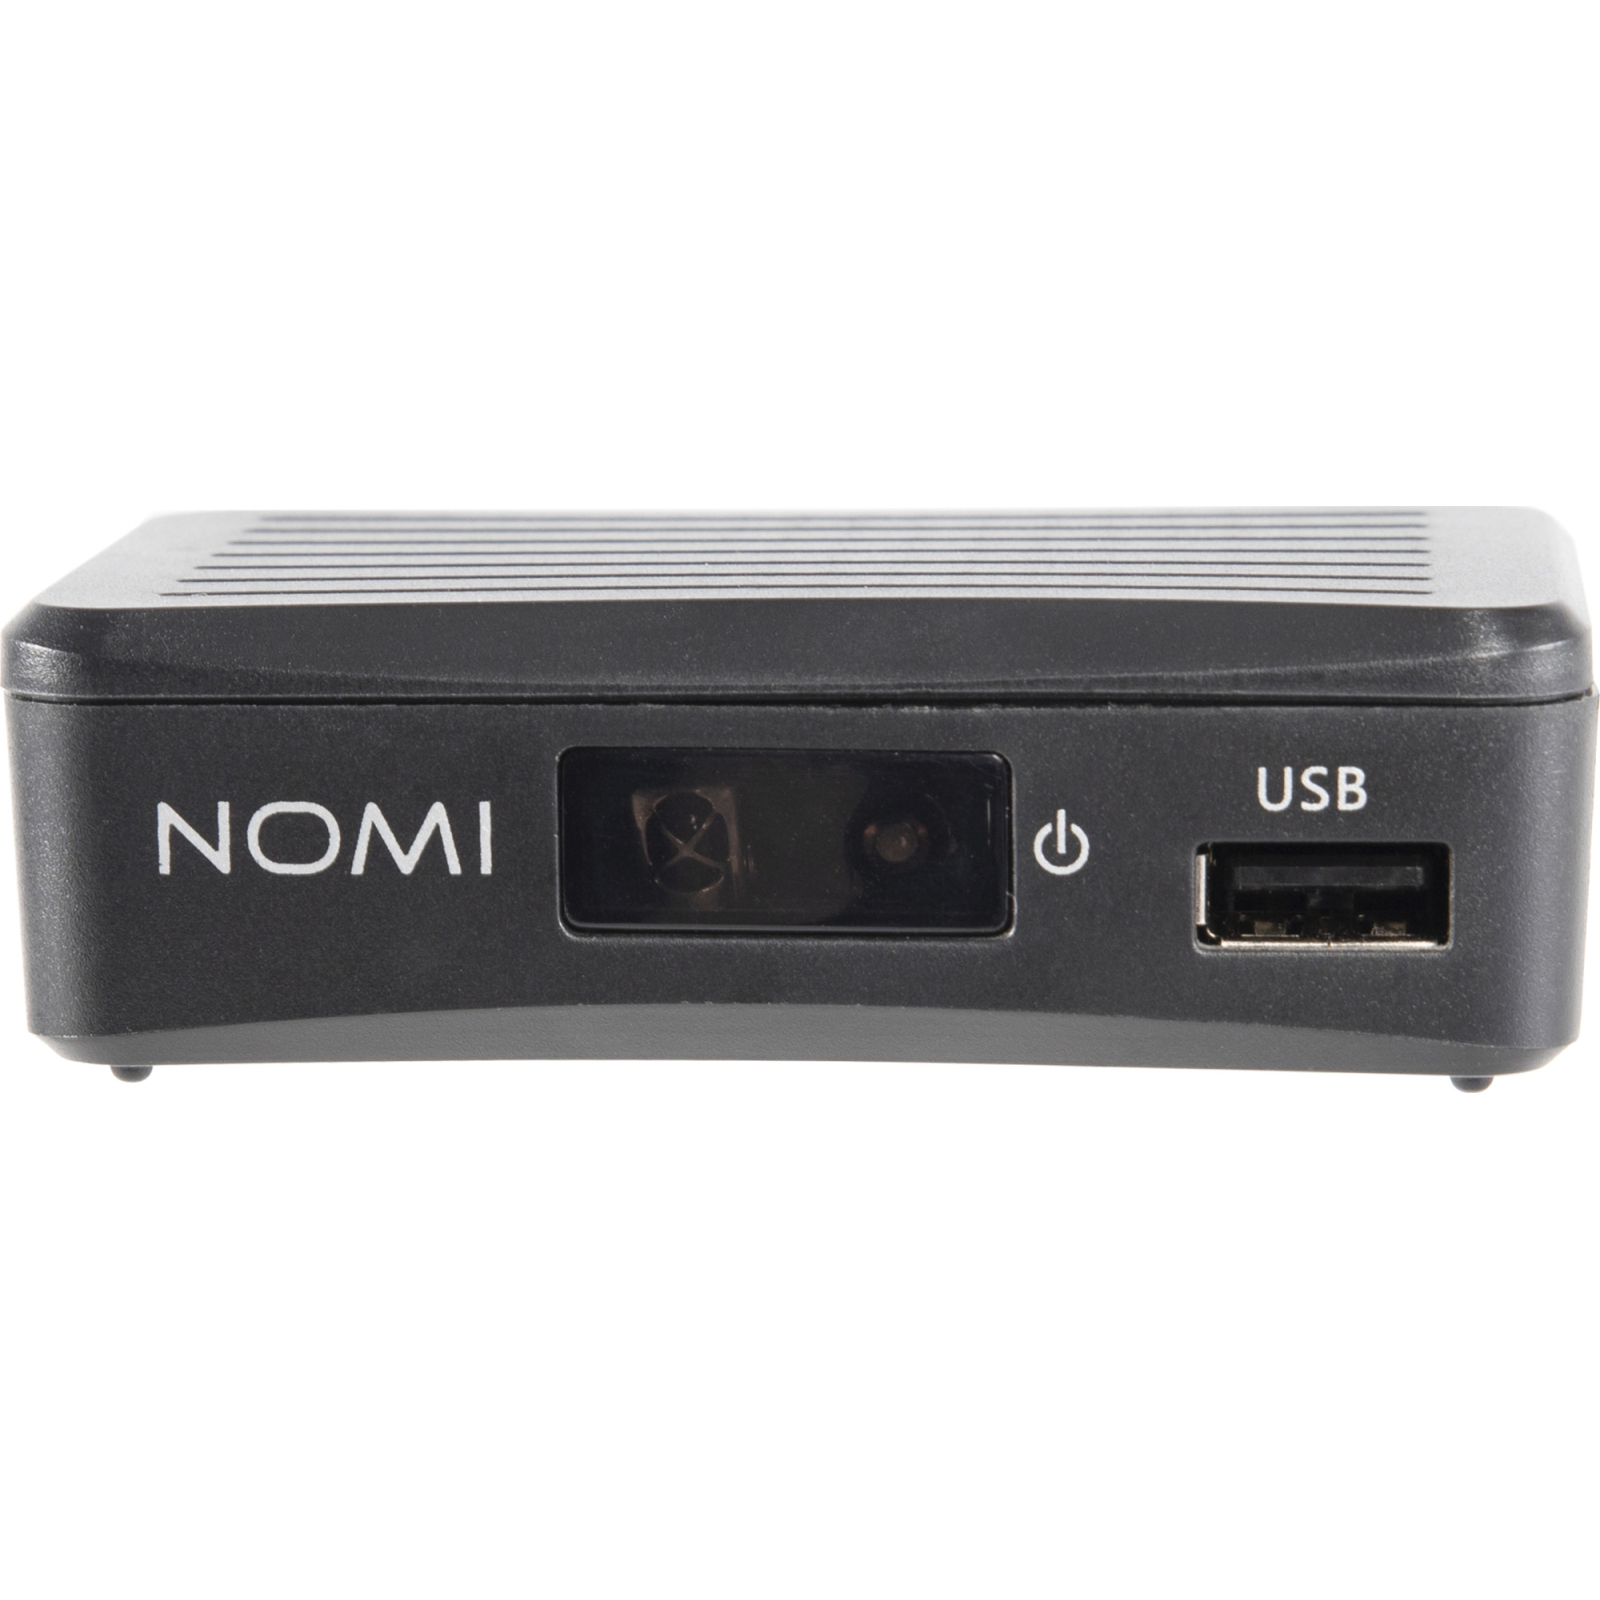 ТВ тюнер Nomi DVB-T2 T203 (425704) зображення 2